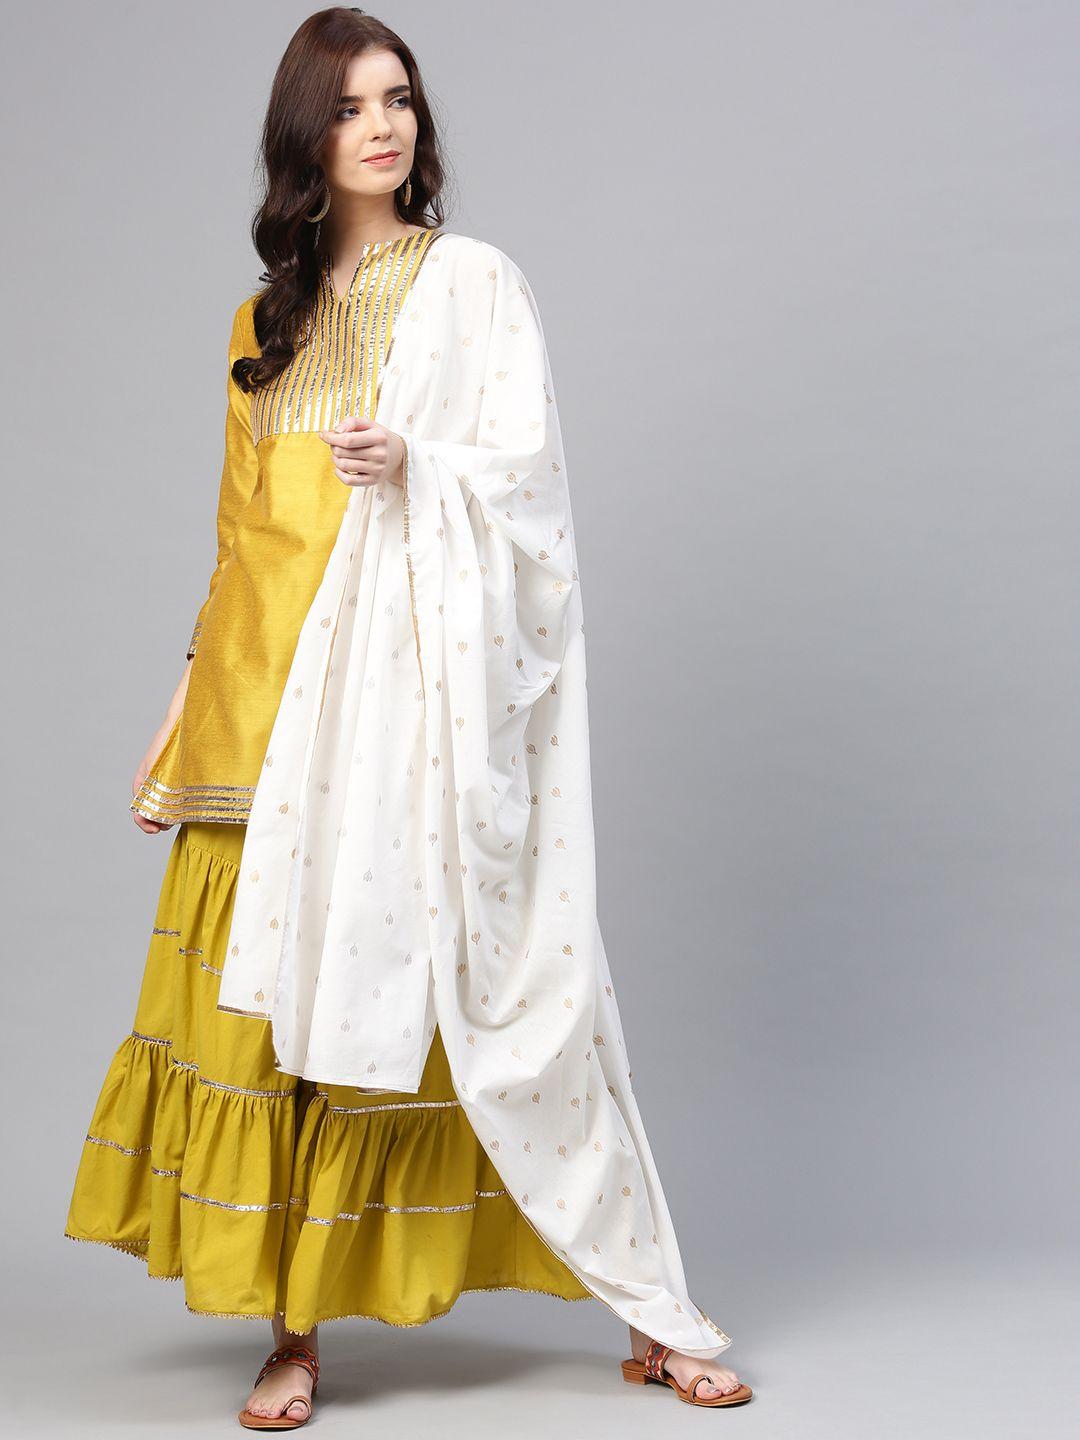 bhama couture women mustard yellow striped kurta with sharara